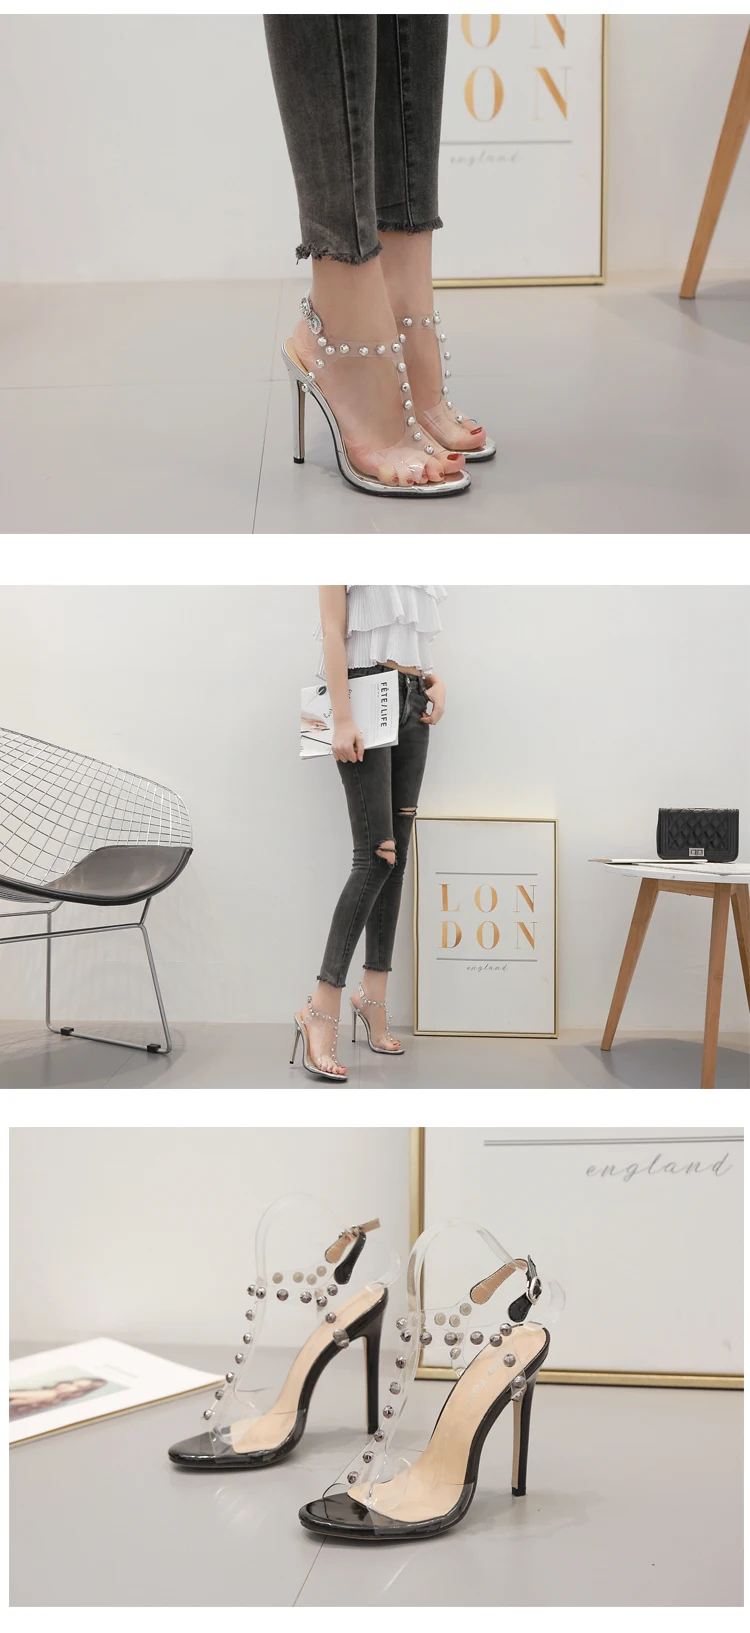 Женские босоножки; обувь знаменитостей в простом стиле; прозрачные босоножки из ПВХ с ремешками и пряжкой; женская обувь на высоком каблуке